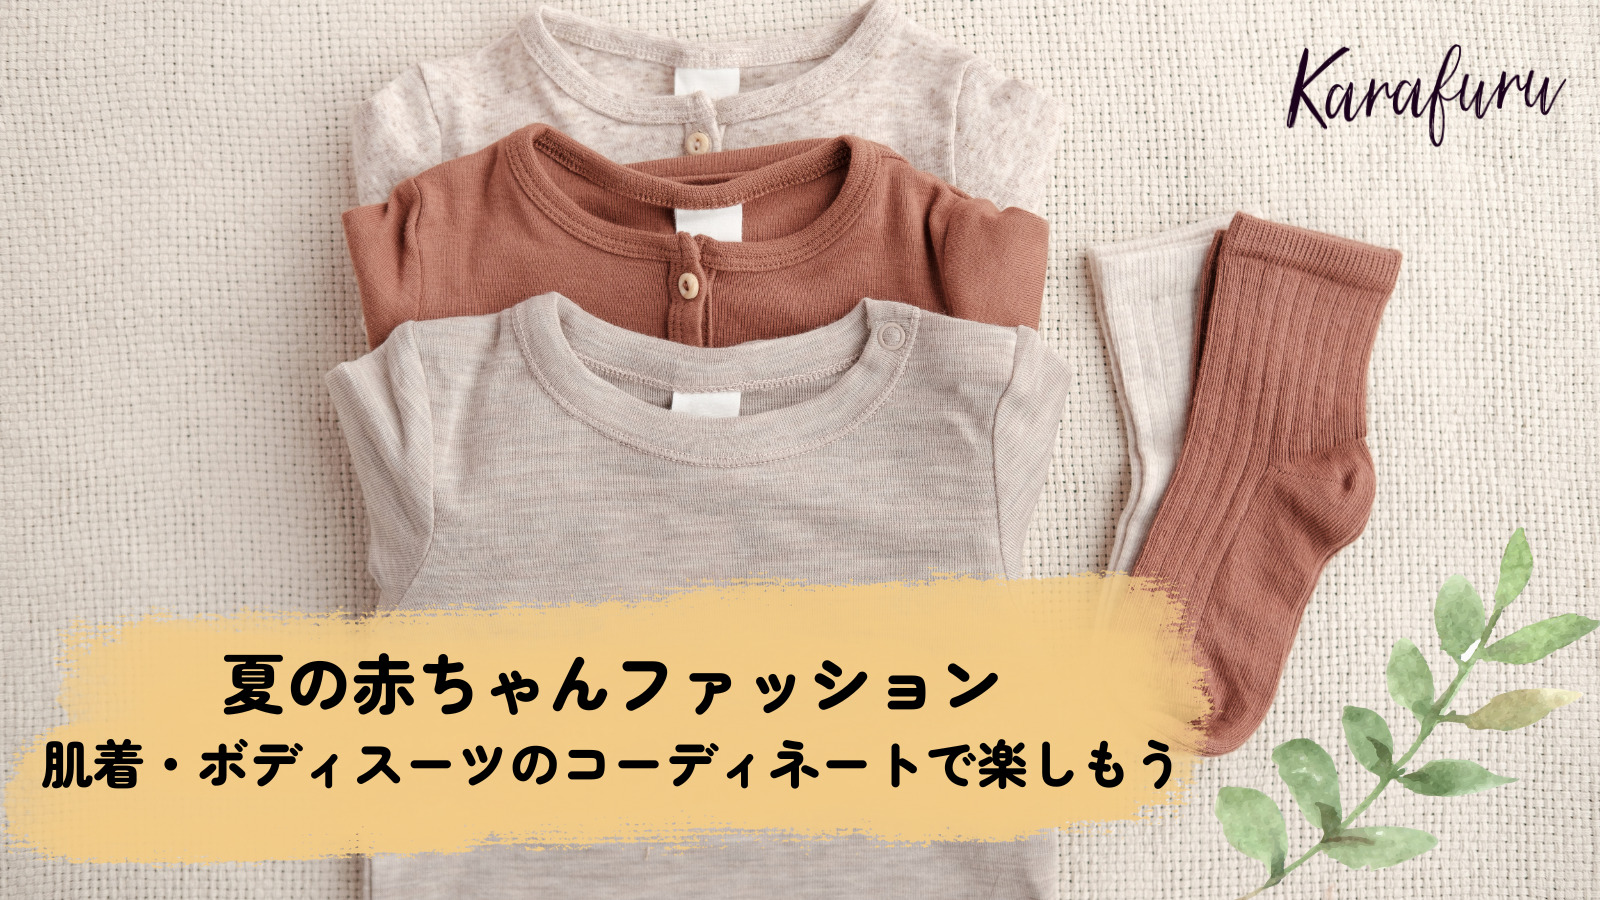 夏の赤ちゃんファッション 肌着 ボディスーツのコーディネートで楽しもう ワーママのための子育て情報webマガジン Karafuru からふる